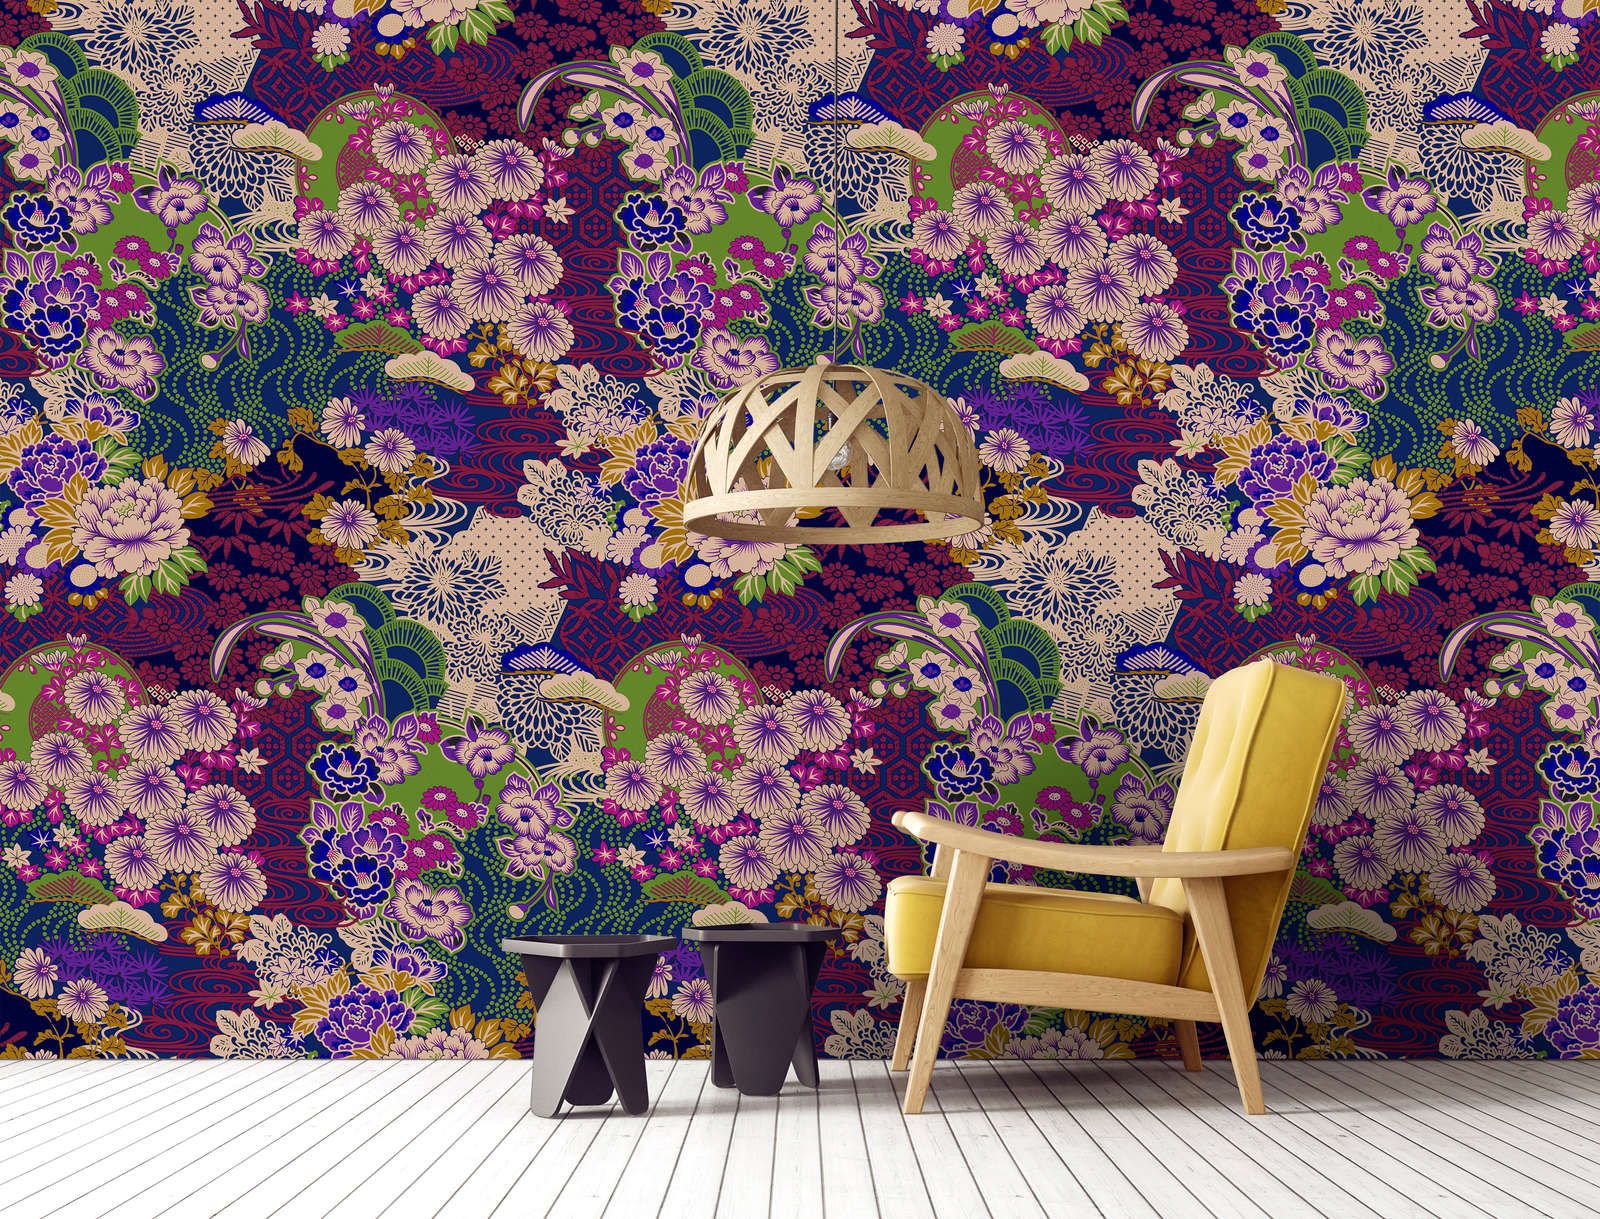             Digital behang »kimo 2« - Abstract bloemenkunstwerk - Paars, Groen | Mat, Vlieseline
        